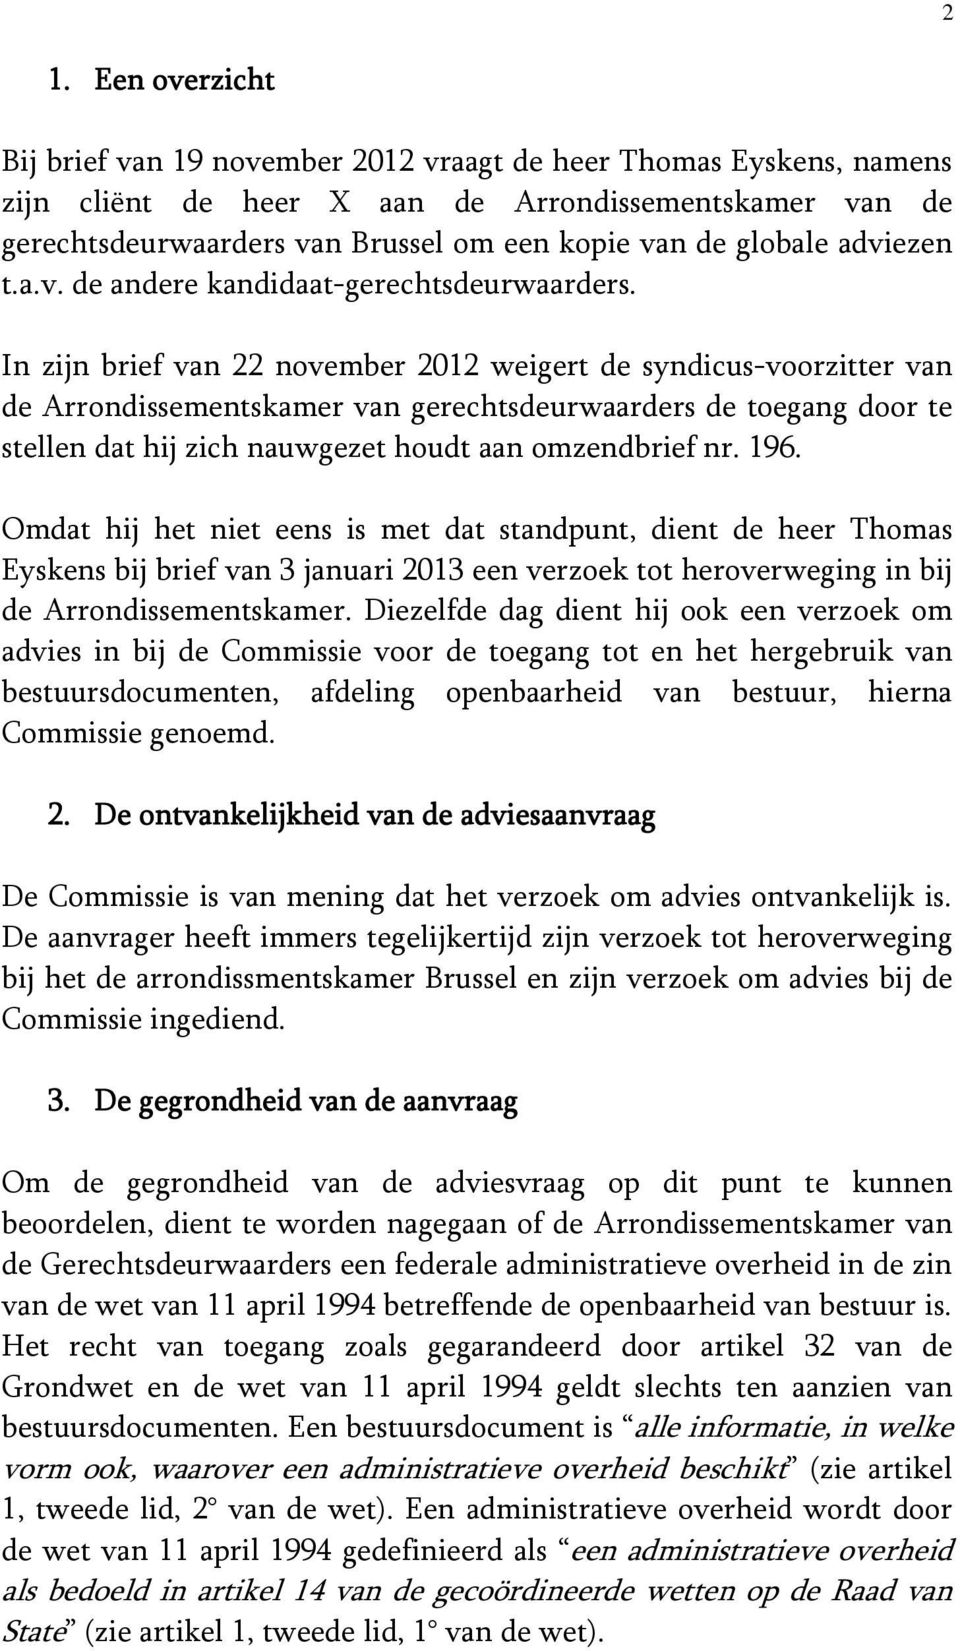 In zijn brief van 22 november 2012 weigert de syndicus-voorzitter van de Arrondissementskamer van gerechtsdeurwaarders de toegang door te stellen dat hij zich nauwgezet houdt aan omzendbrief nr. 196.